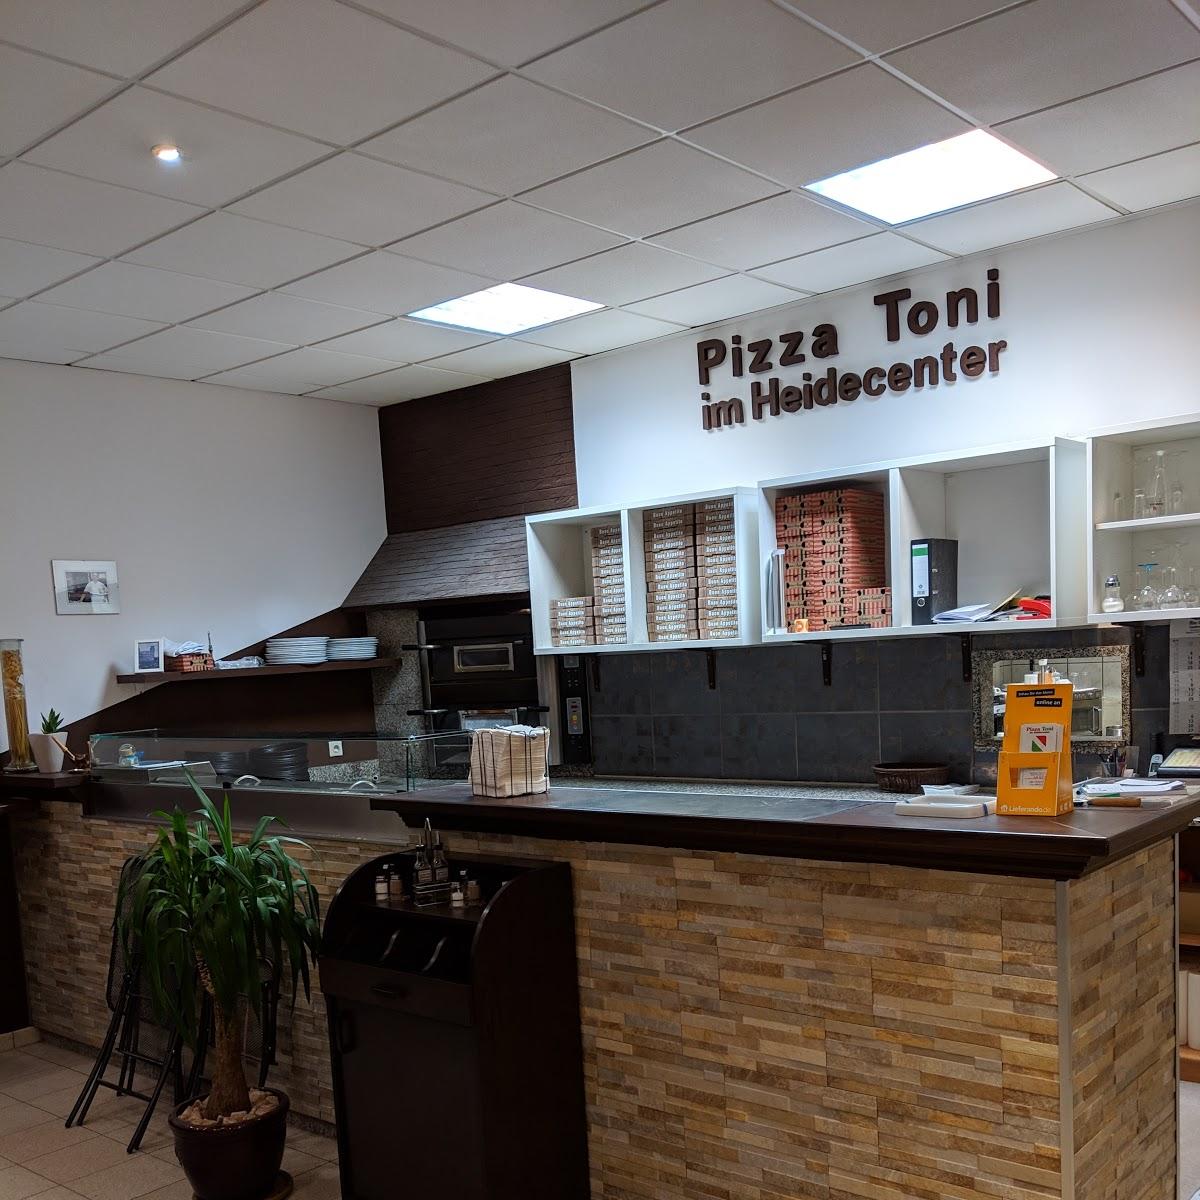 Restaurant "Pizza Toni im Heidecenter" in Paderborn